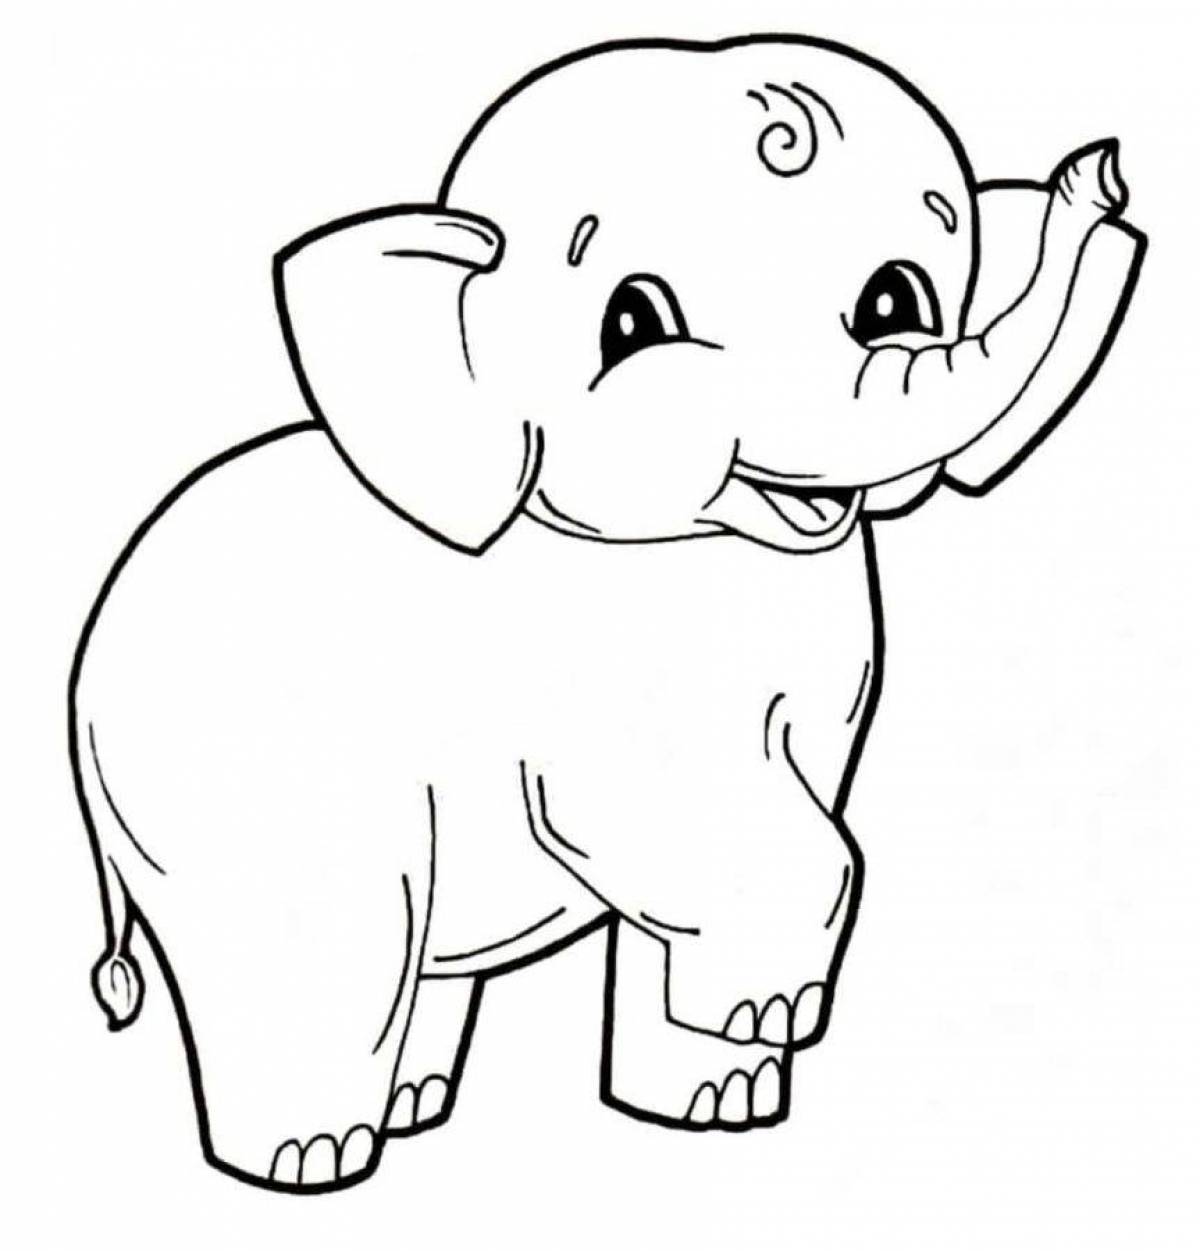 Юмористическая раскраска слон